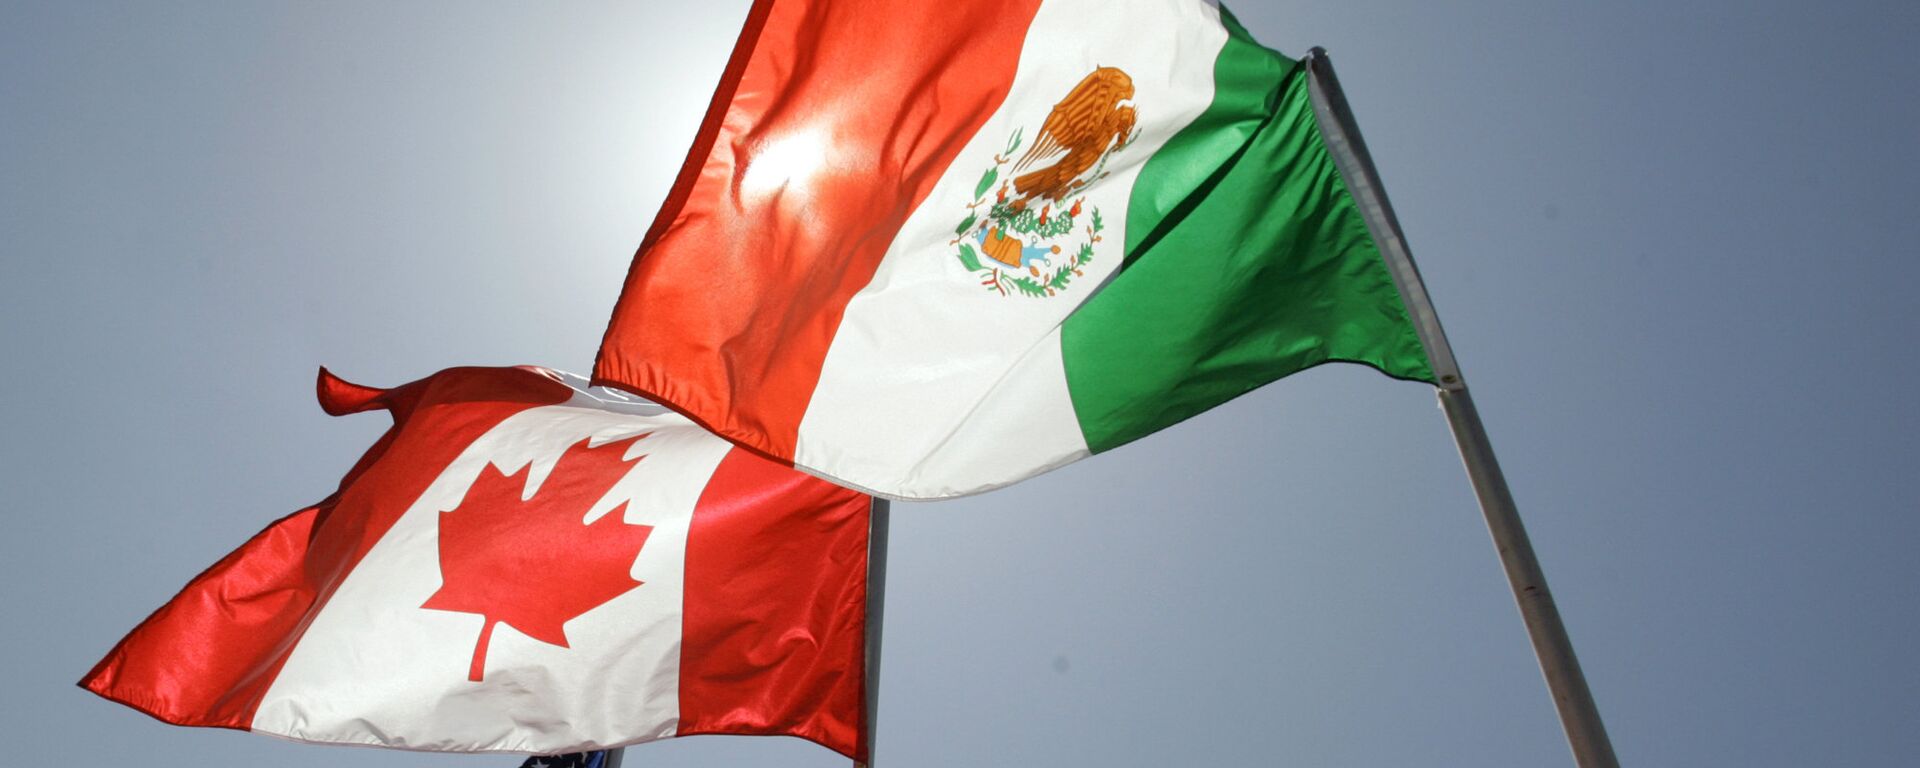 Las banderas de EEUU, Canadá y México - Sputnik Mundo, 1920, 12.10.2021